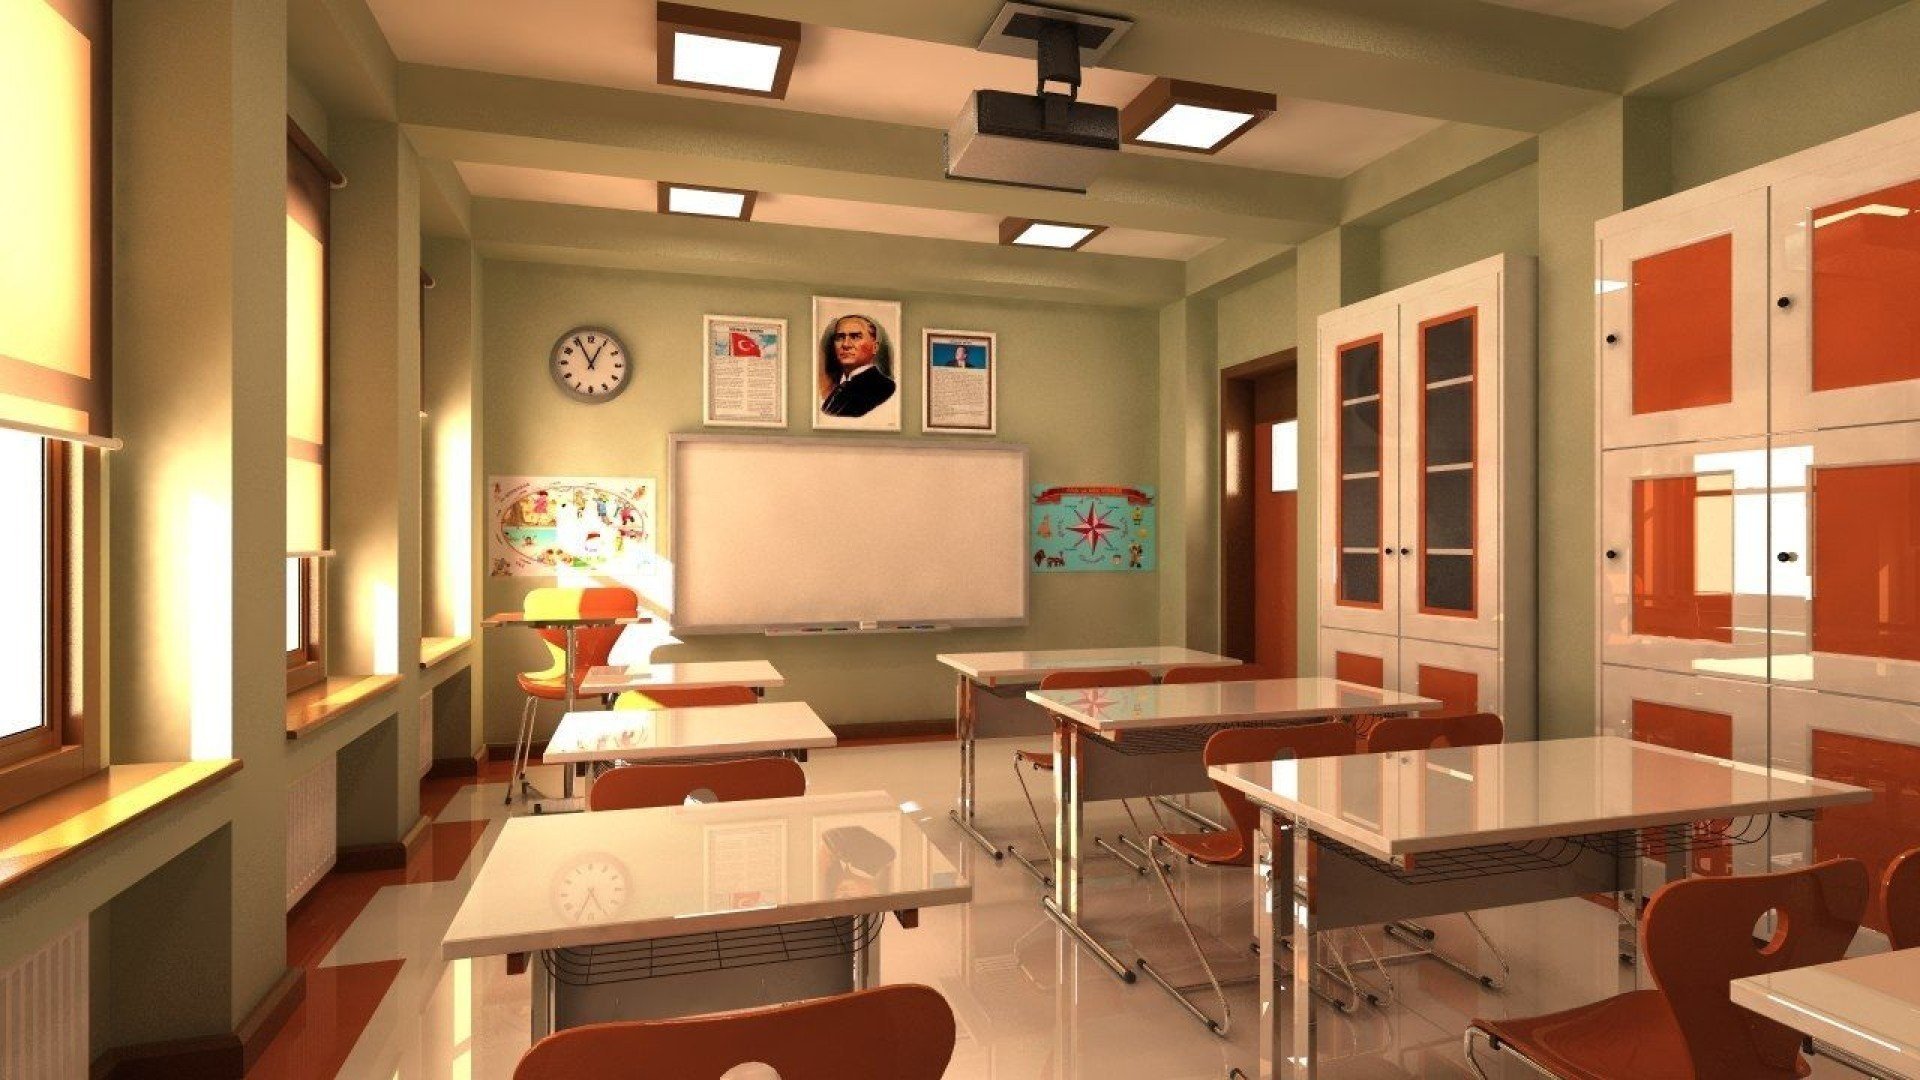 Хорошие простые школы. Интерьер класса. Современный кабинет в школе. Интерьер учебного класса. Интерьер классной комнаты в школе.